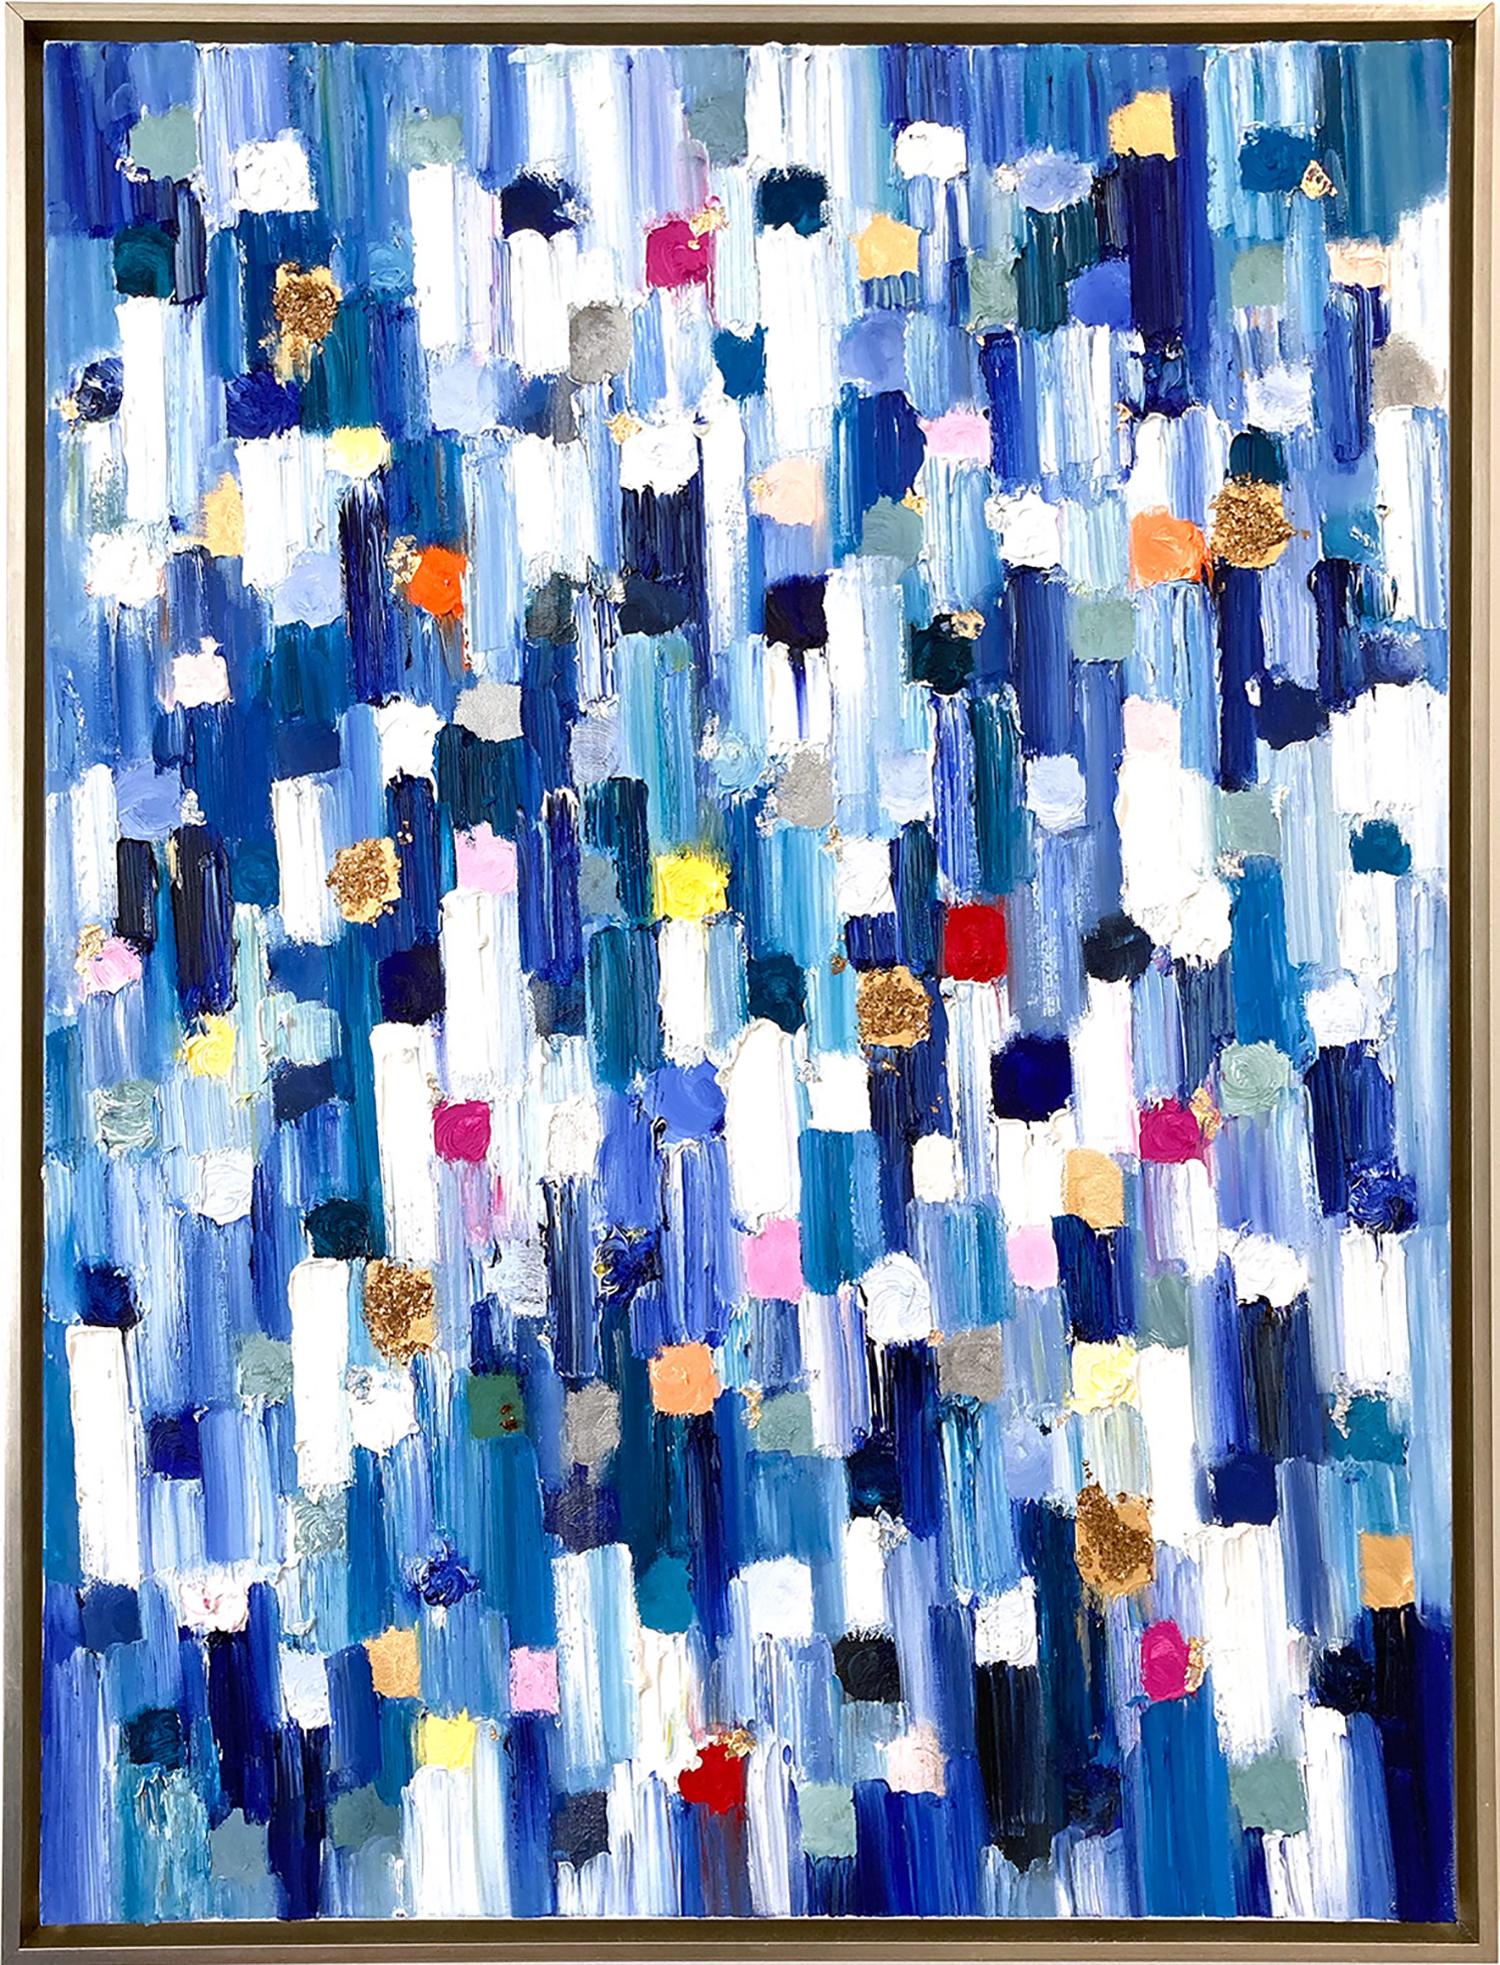 Abstract Painting Cindy Shaoul - « Droping Dots - St Tropez », peinture abstraite colorée à l'huile sur toile, technique mixte 